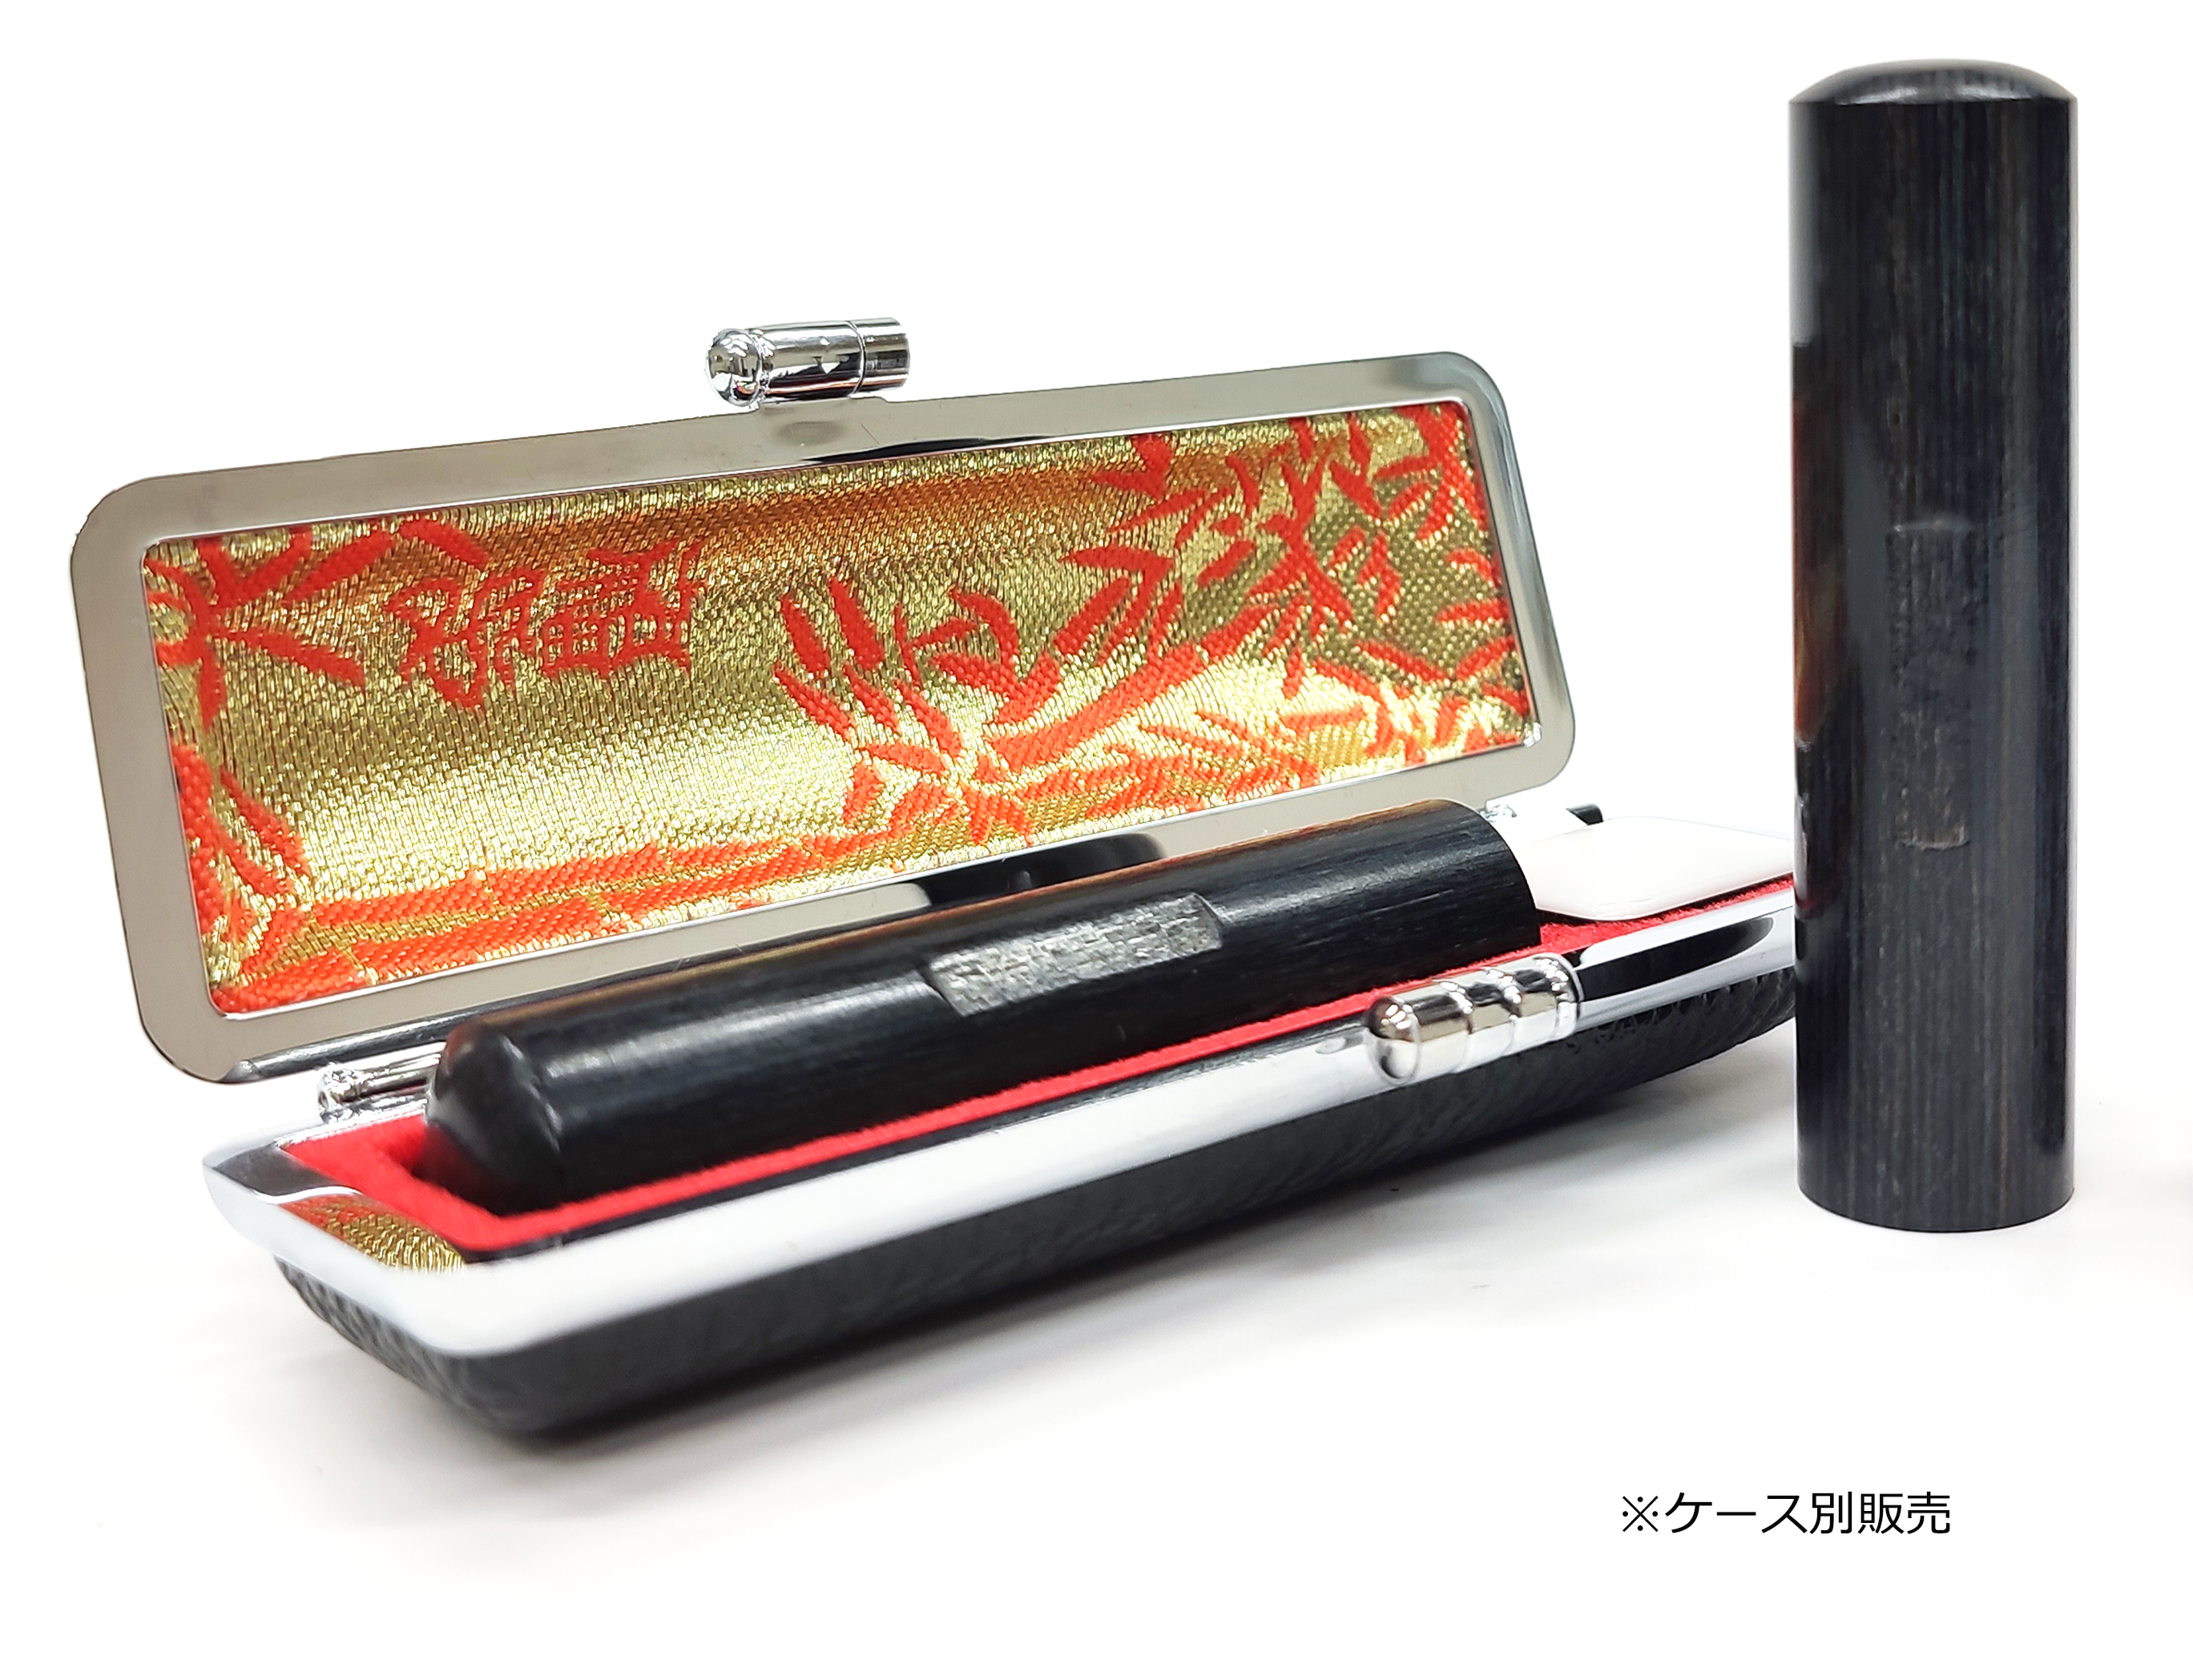 目印付き·エコカンバ黒 実印18.0mm_木製実印の激安通販店Yinkan